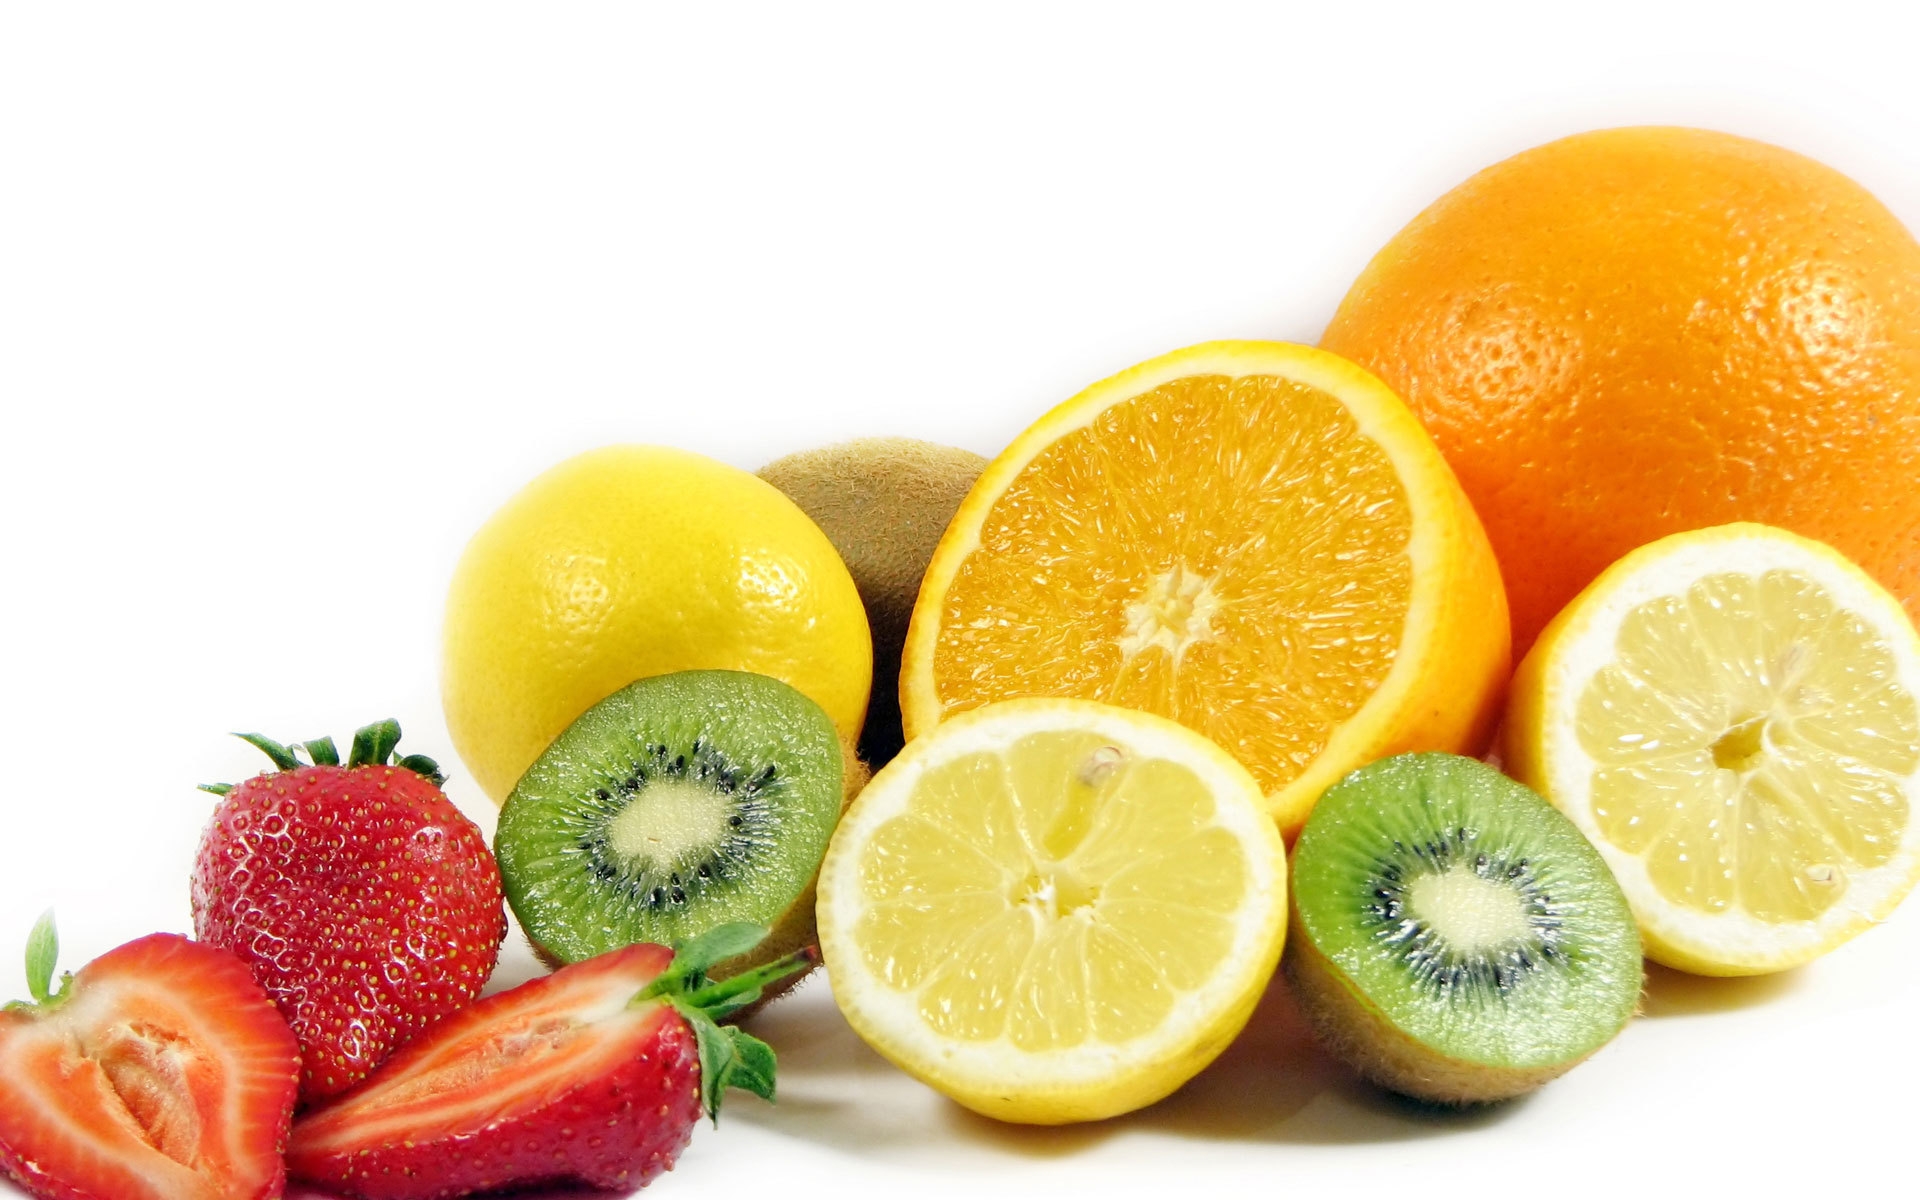 fruit-kiwi-lemon-orange-strawberry-advantage-1920x1200